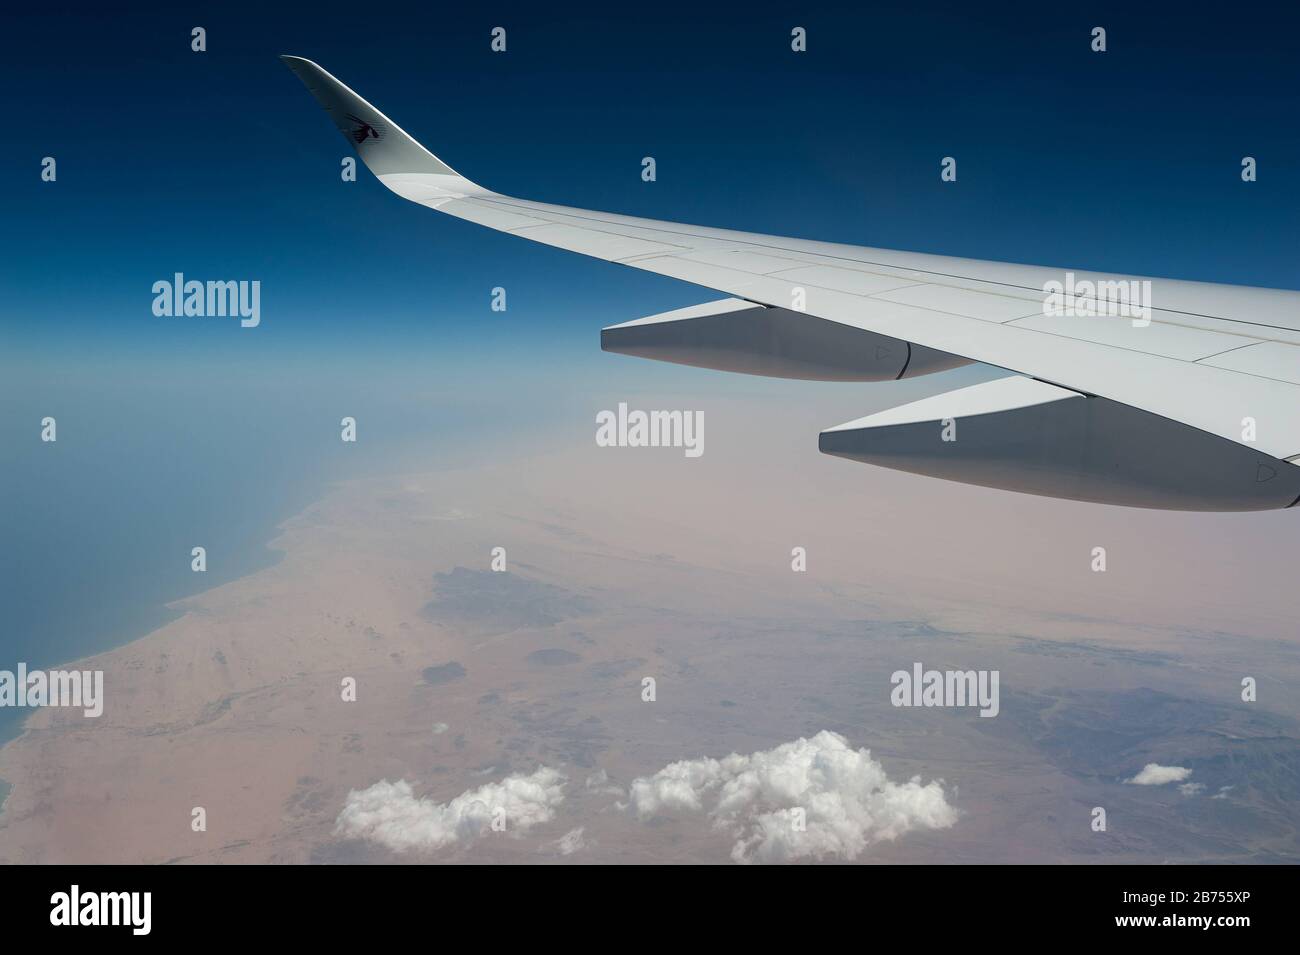 05.06.2019, Oman - Flug mit einem Airbus A350 von Qatar Airways über Oman auf dem Weg nach Doha. [Automatisierte Übersetzung] Stockfoto